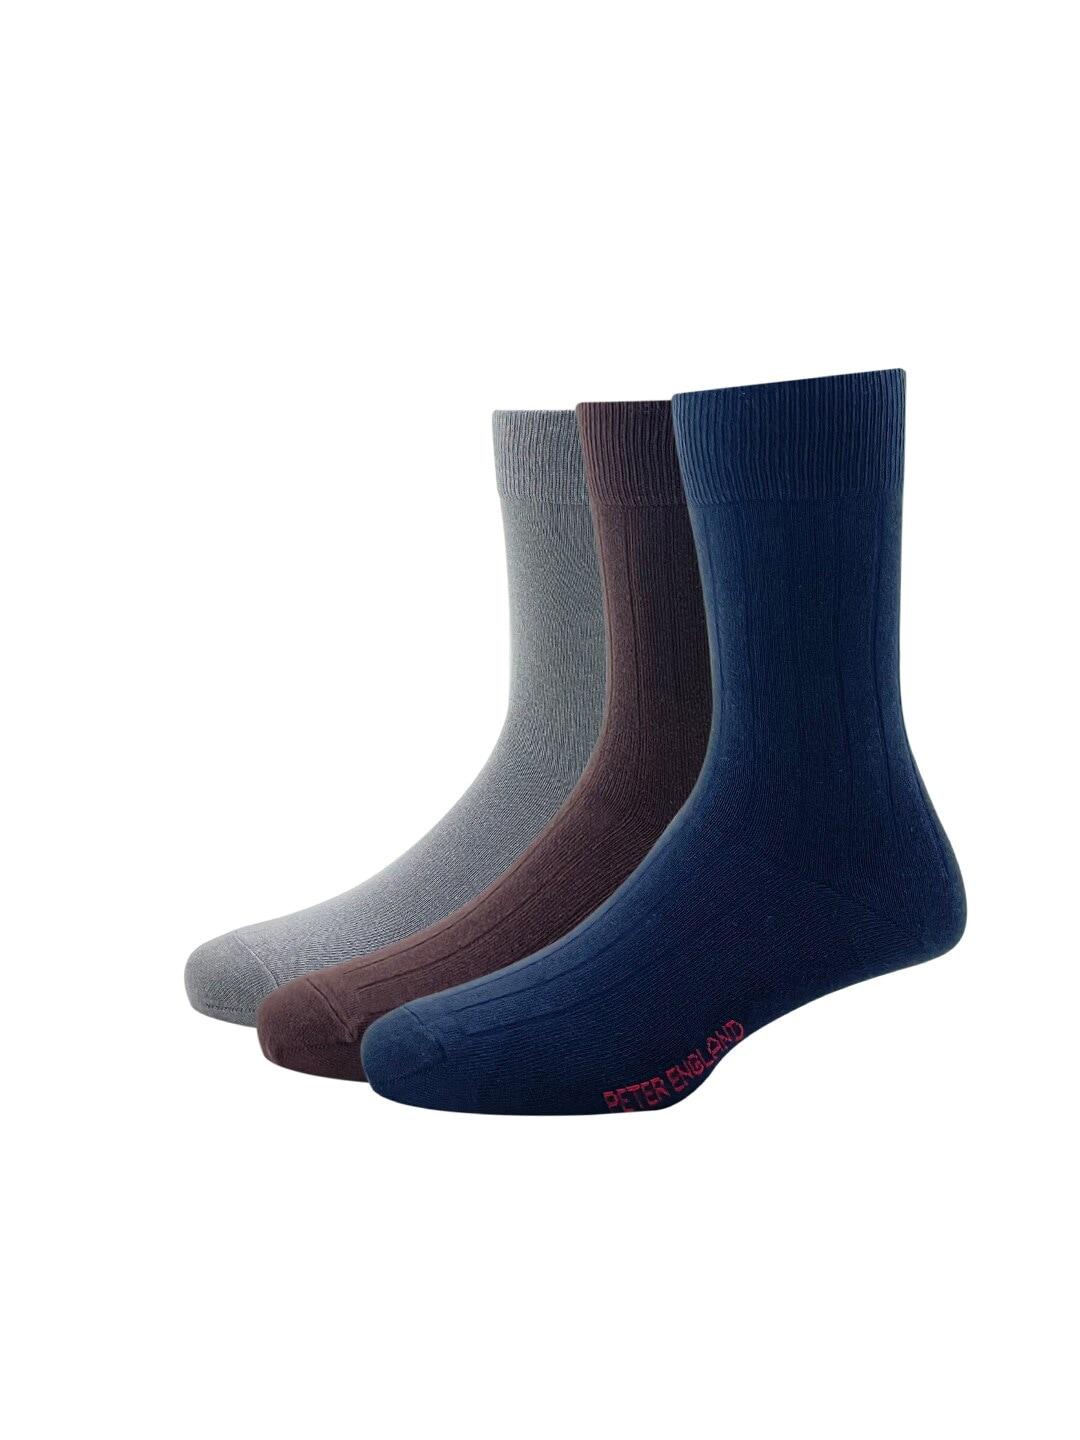 peter-england-men-pack-of-3-brown-&-grey-calf-length-socks